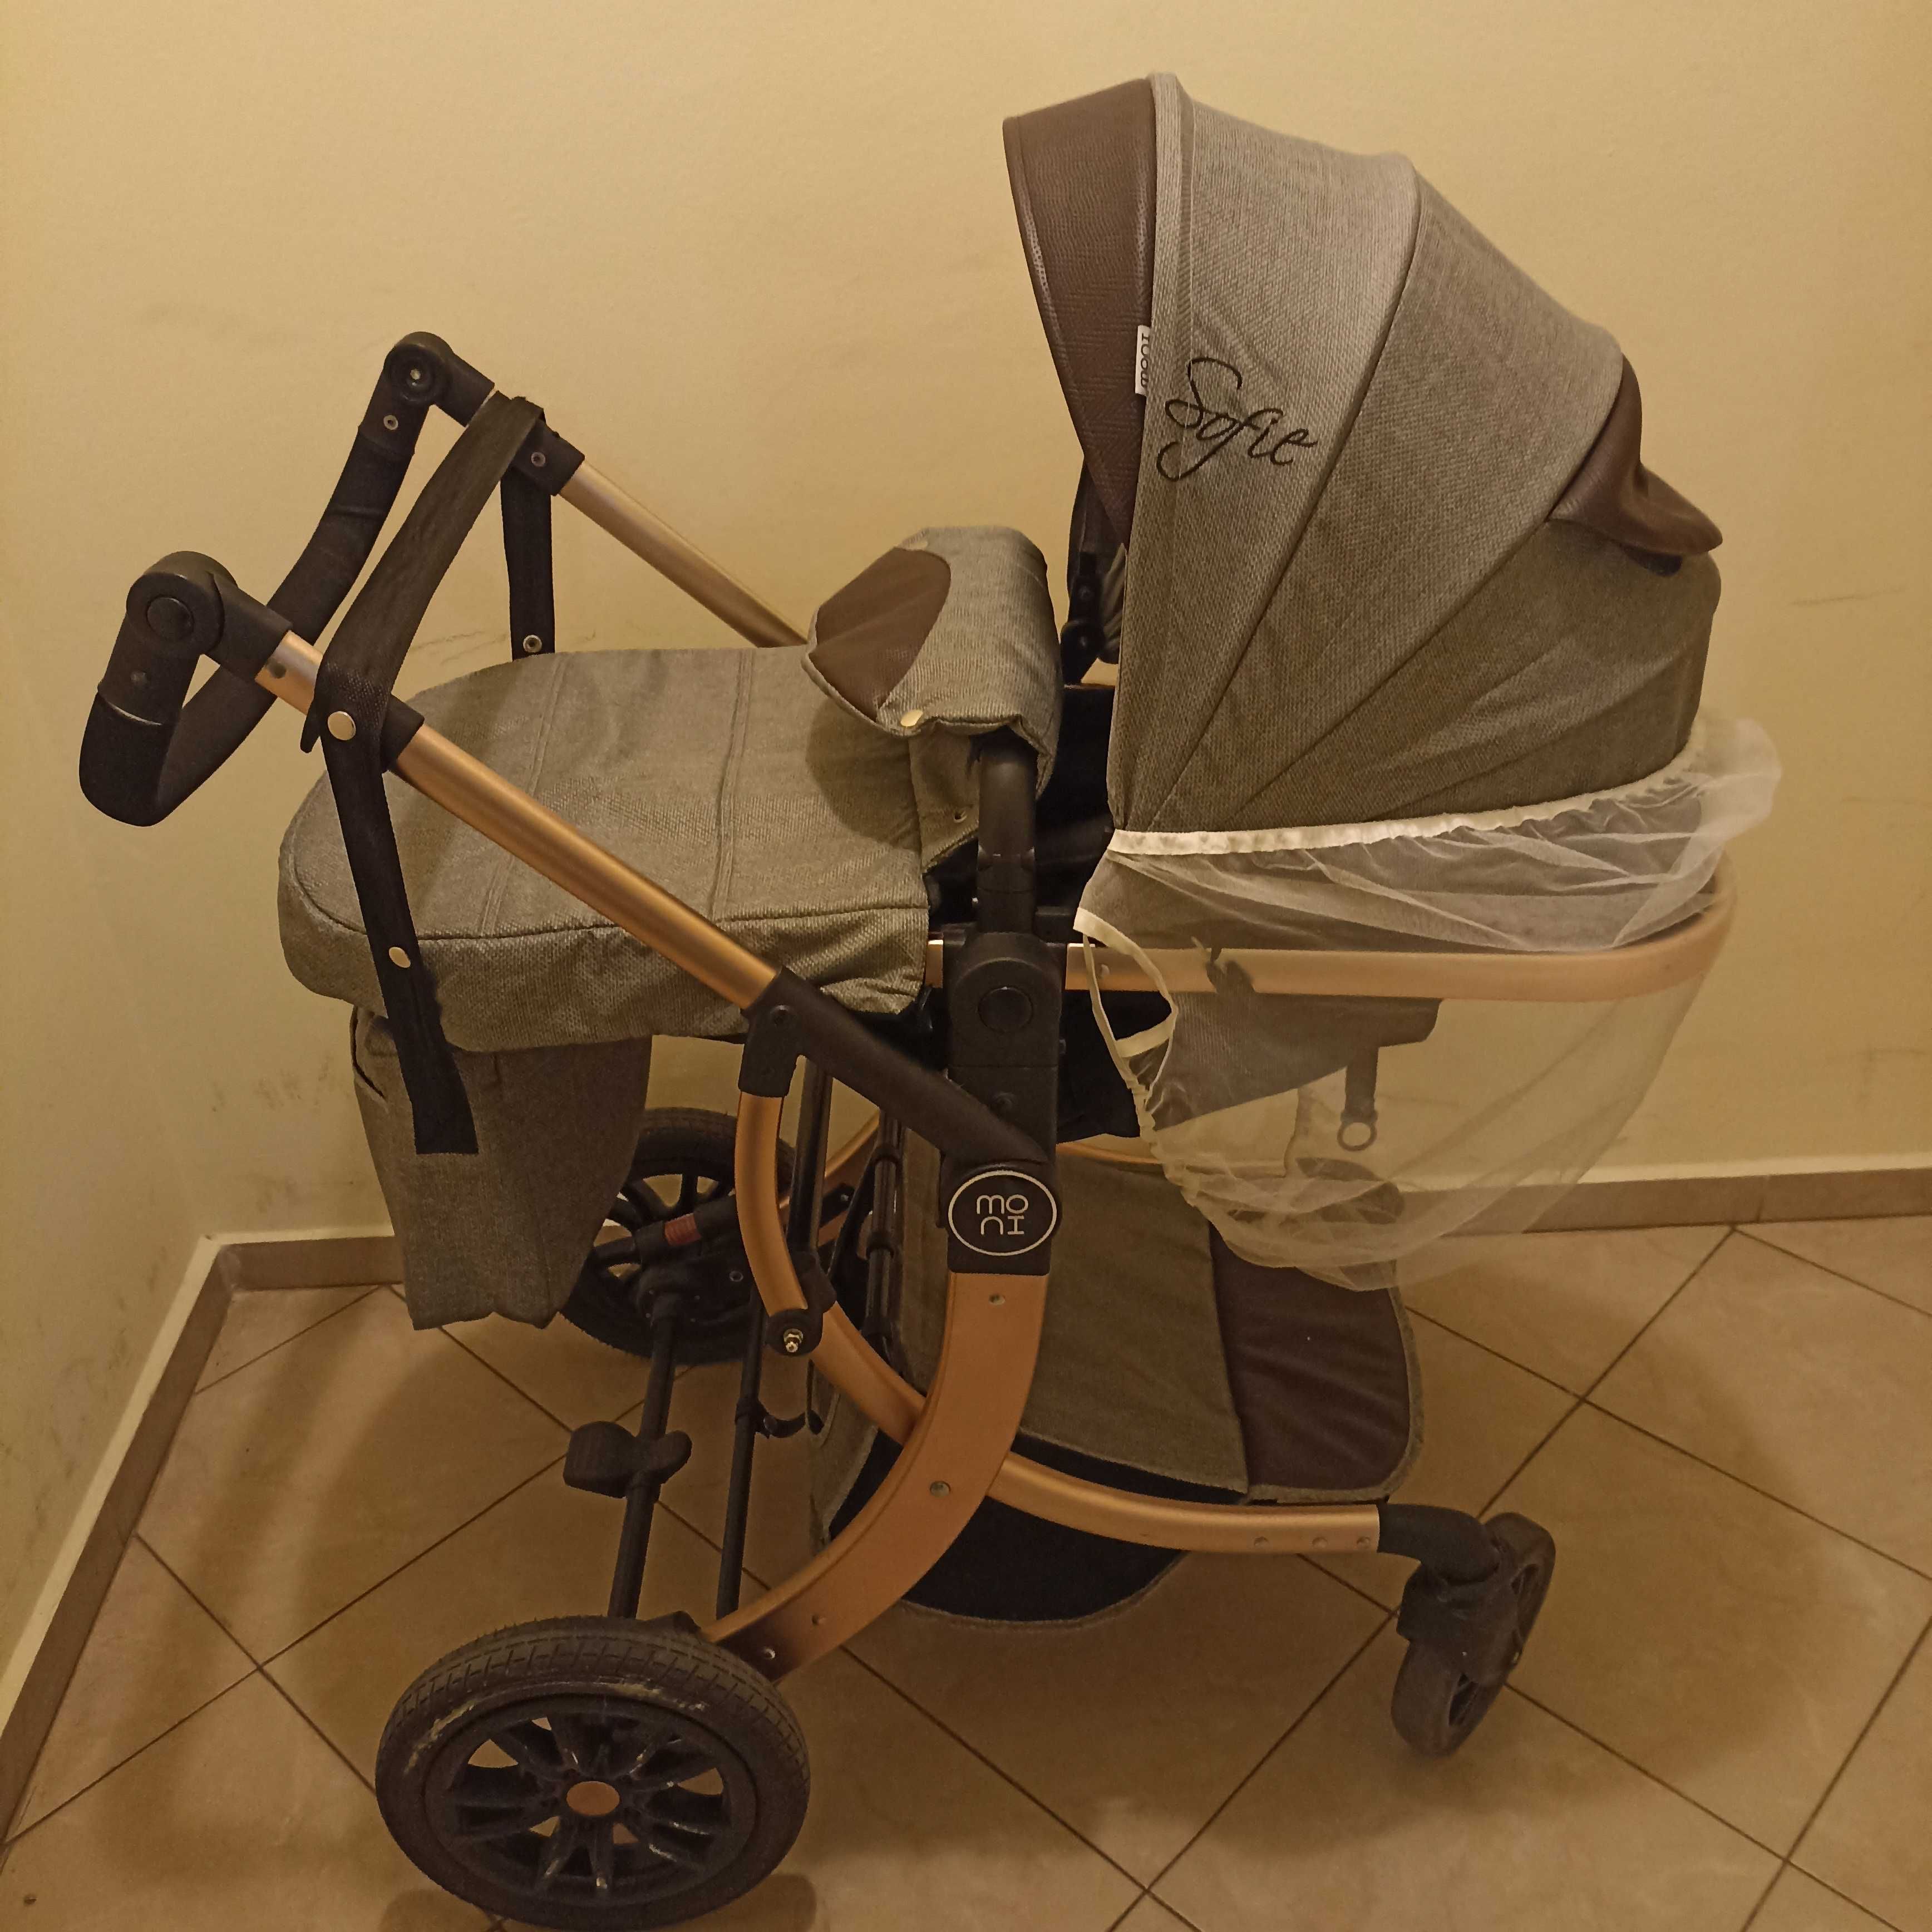 Комбинирана детска количка Moni Sofie